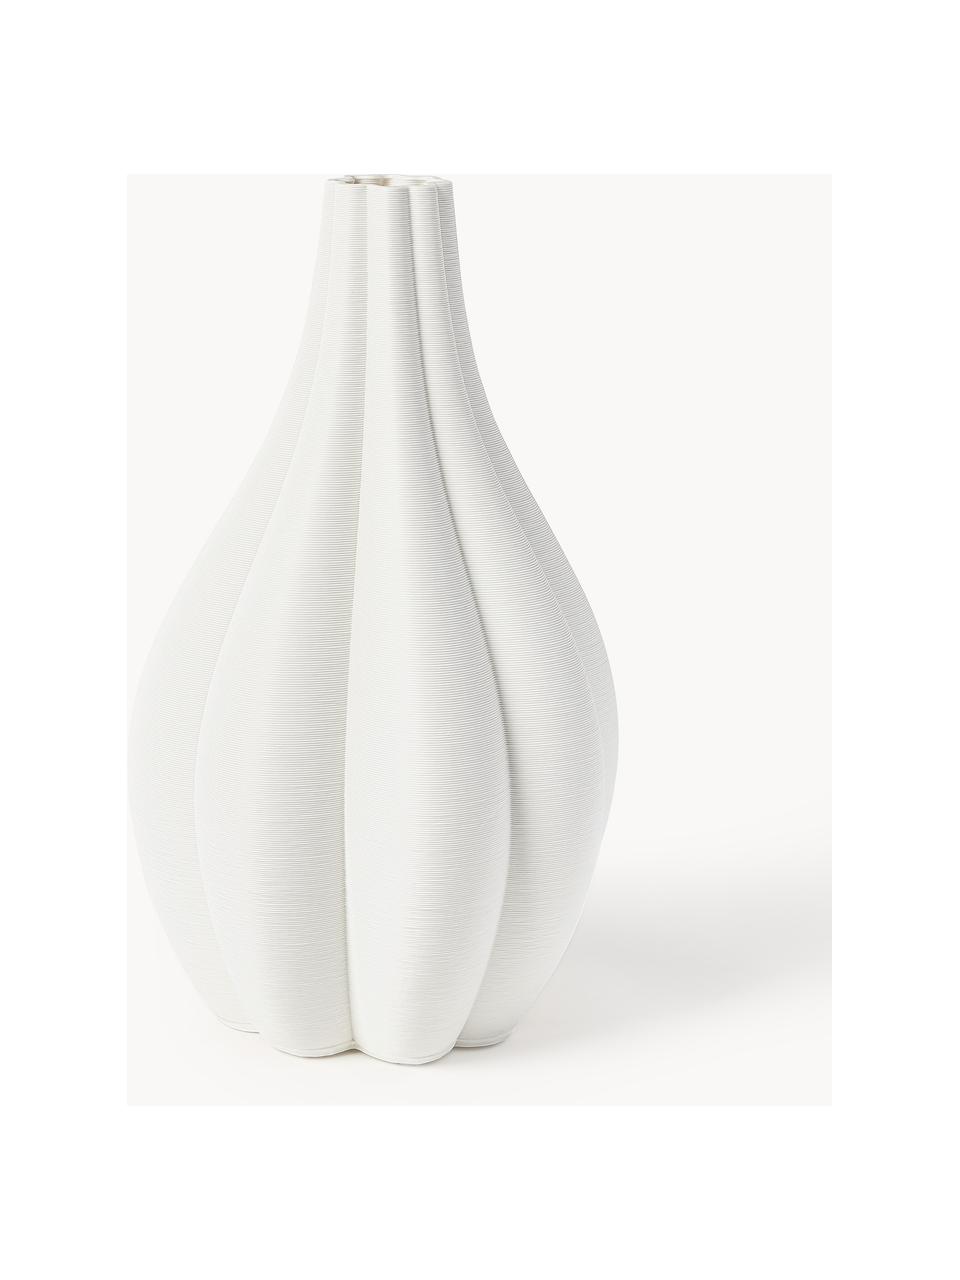 Velká 3D tištěná váza z porcelánu Melody, V 40 cm, Porcelán, Bílá, Ø 23 cm, V 40 cm